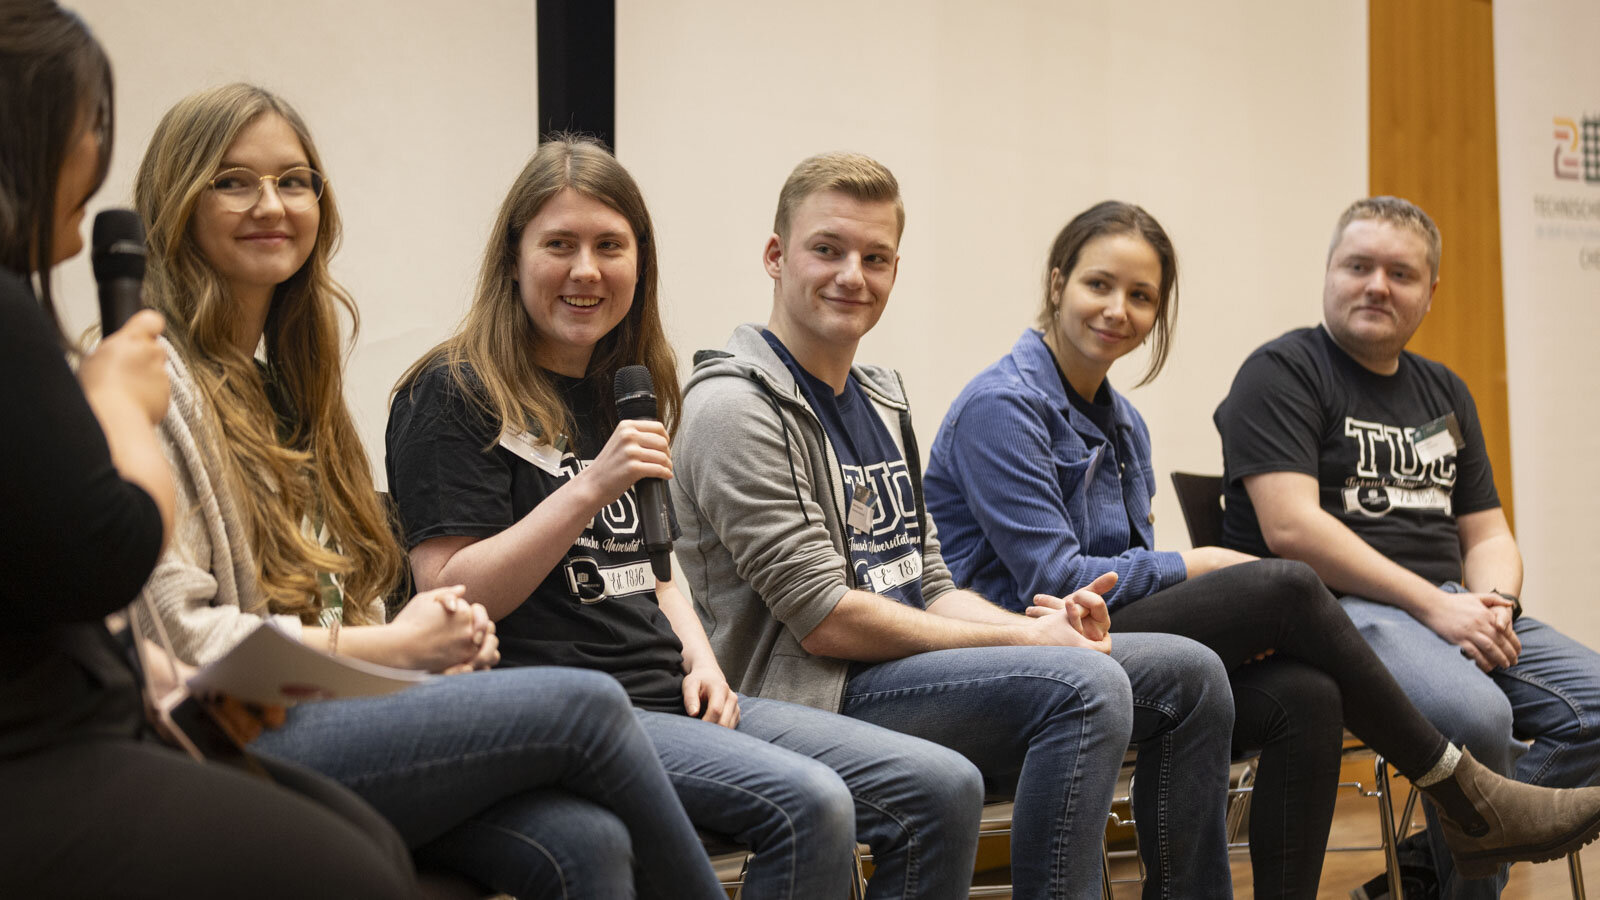 Fünf Studierende sitzen nebeneinander auf Stühlen, eine Person hält ein Mikrofon in der Hand.